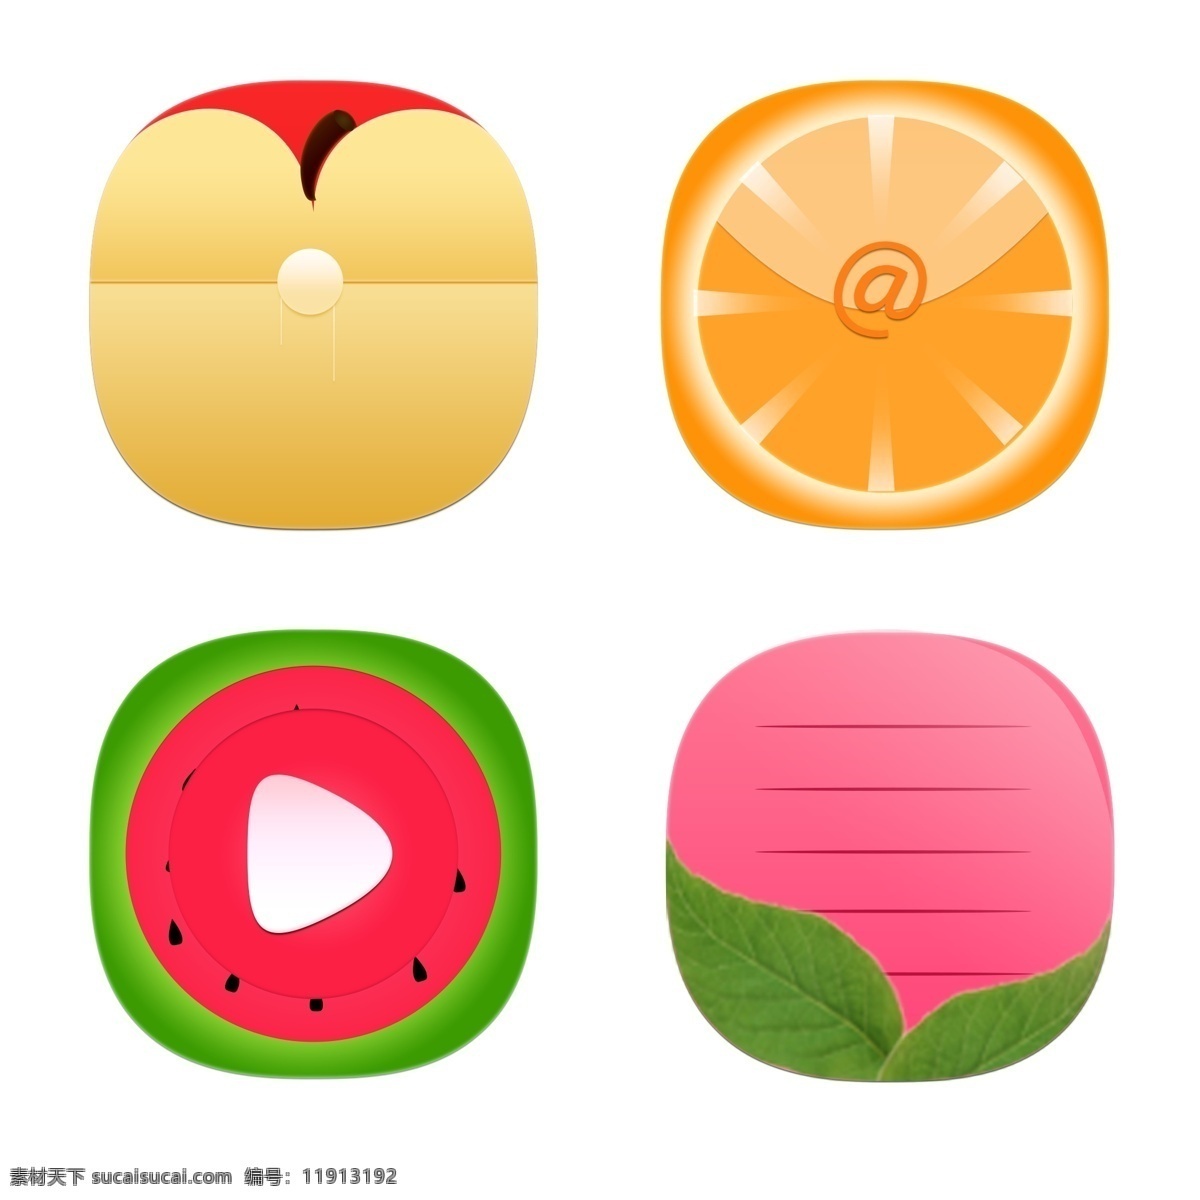 手绘 卡通 水果 系列 图标 手绘卡通 文件袋 邮箱 播放 备忘录 苹果 橙子 西瓜 桃子 图标按钮 app